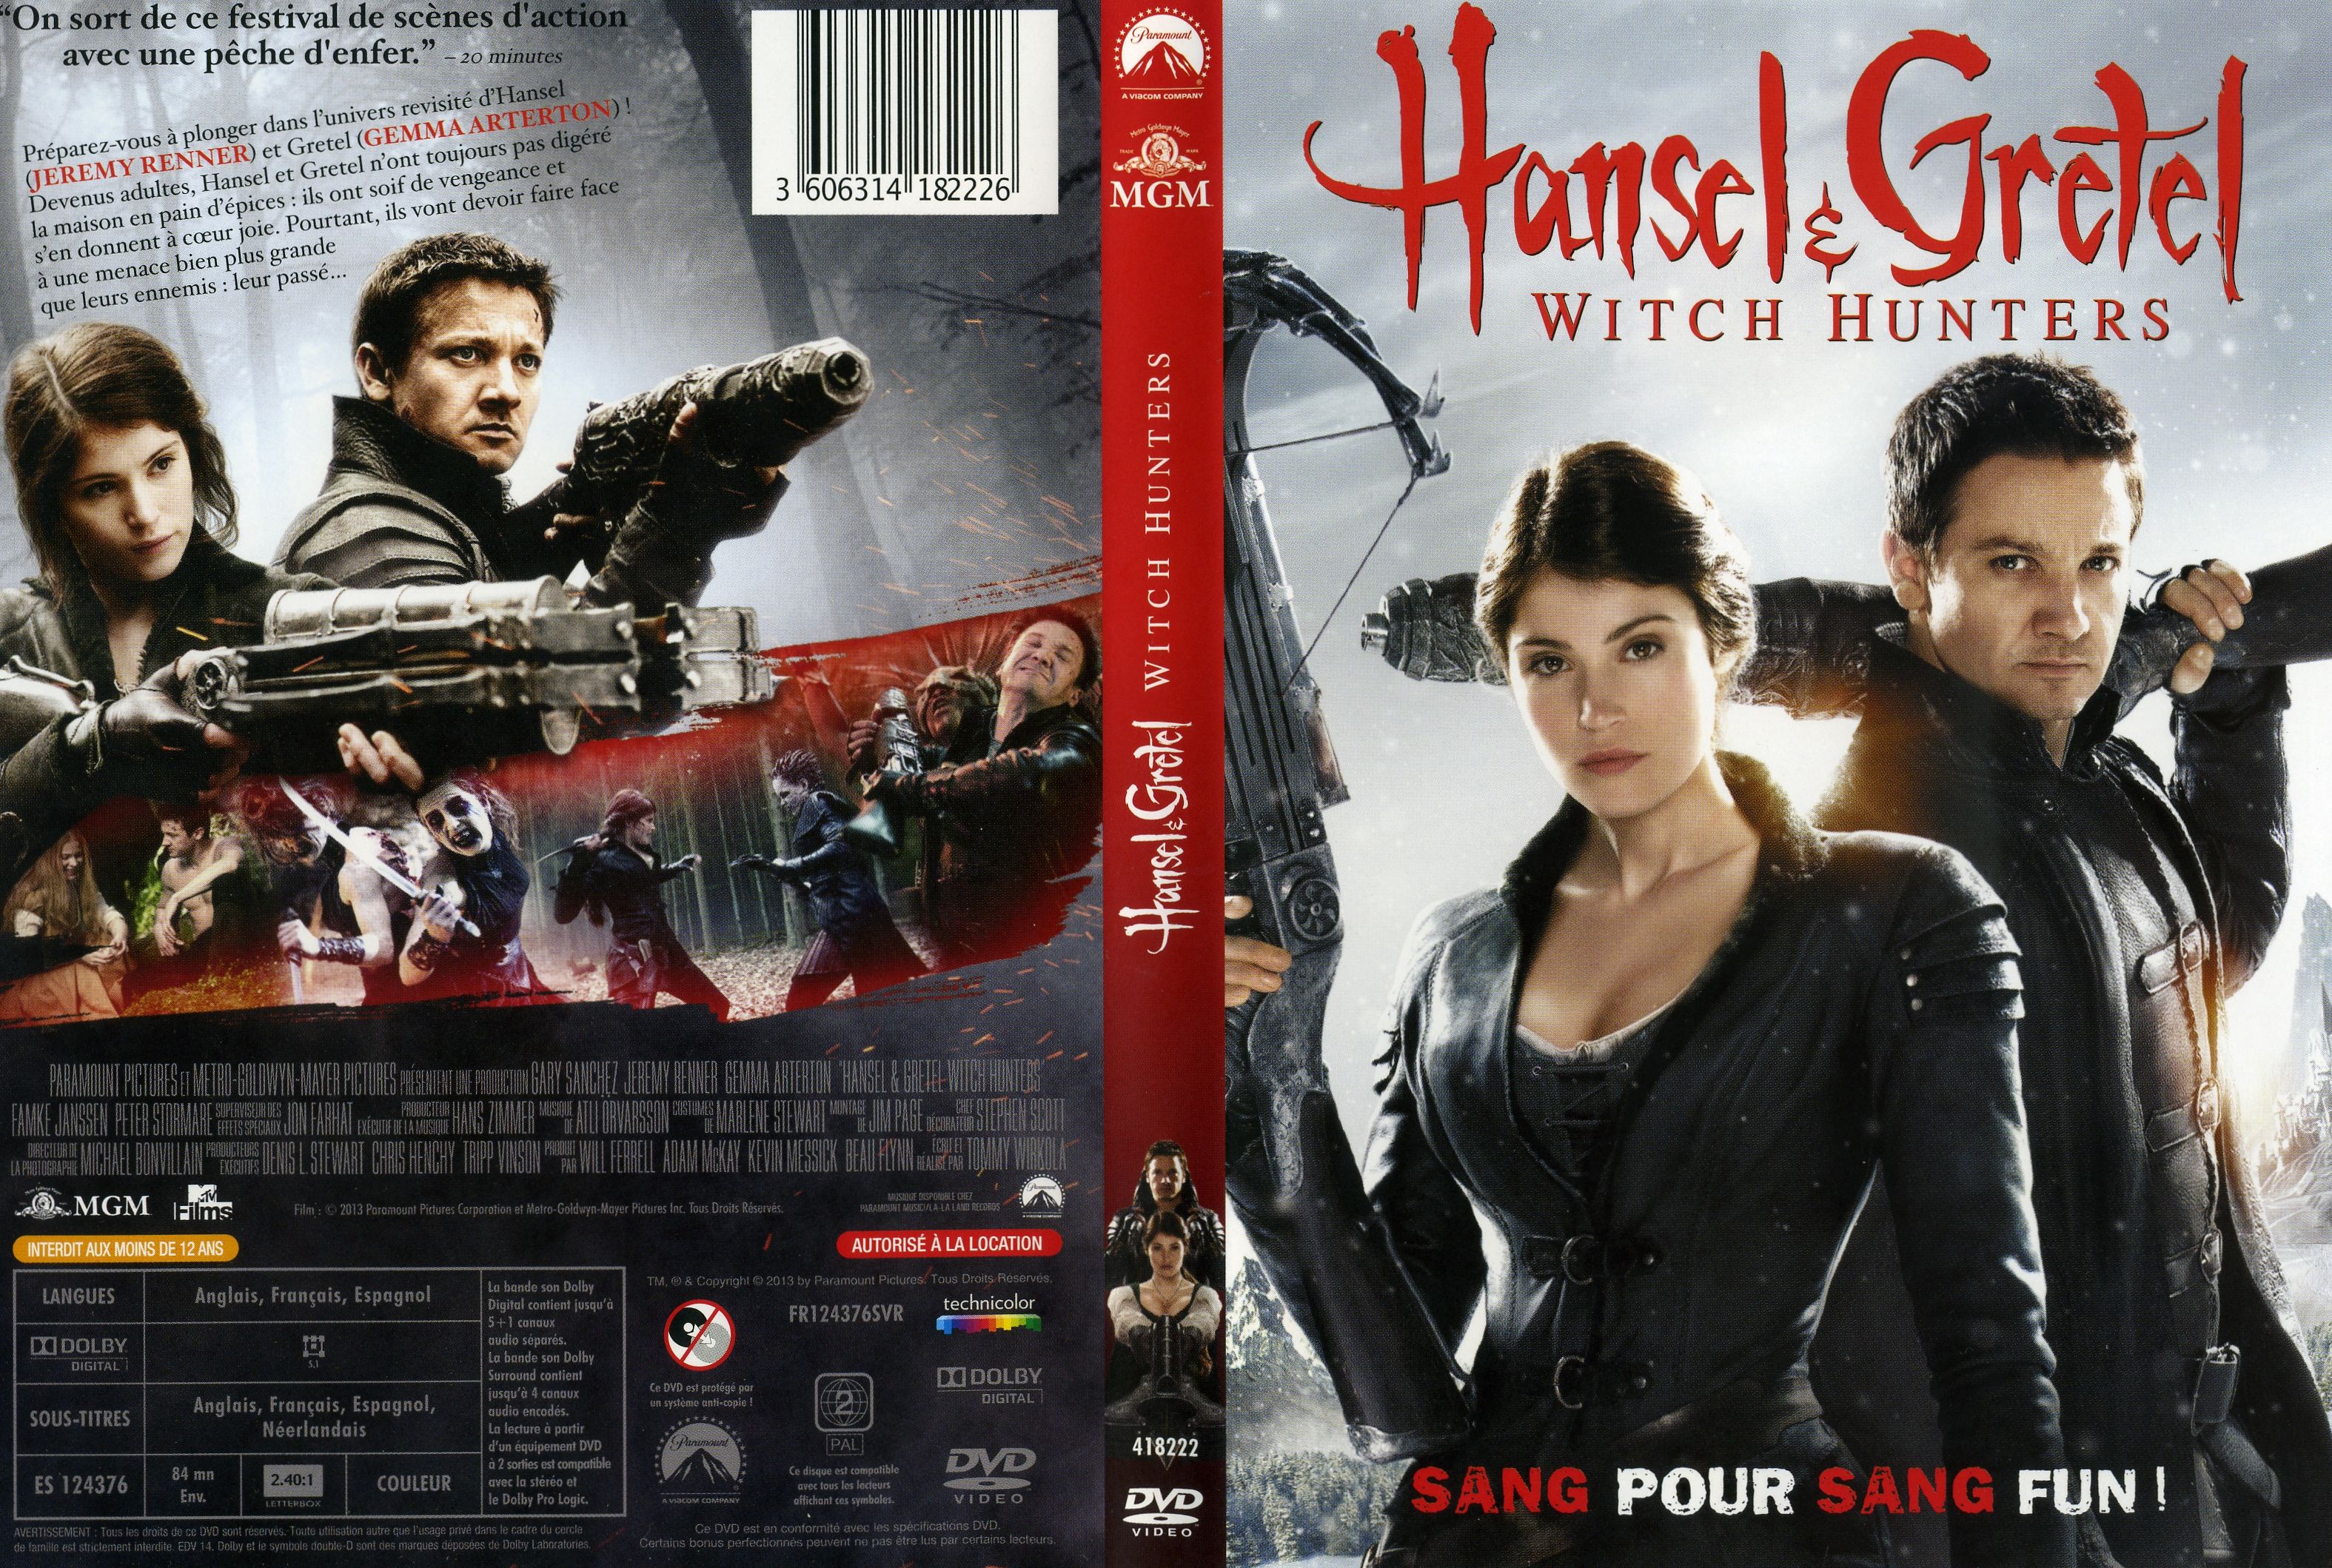 Jaquette DVD Hansel et Gretel Witch Hunters